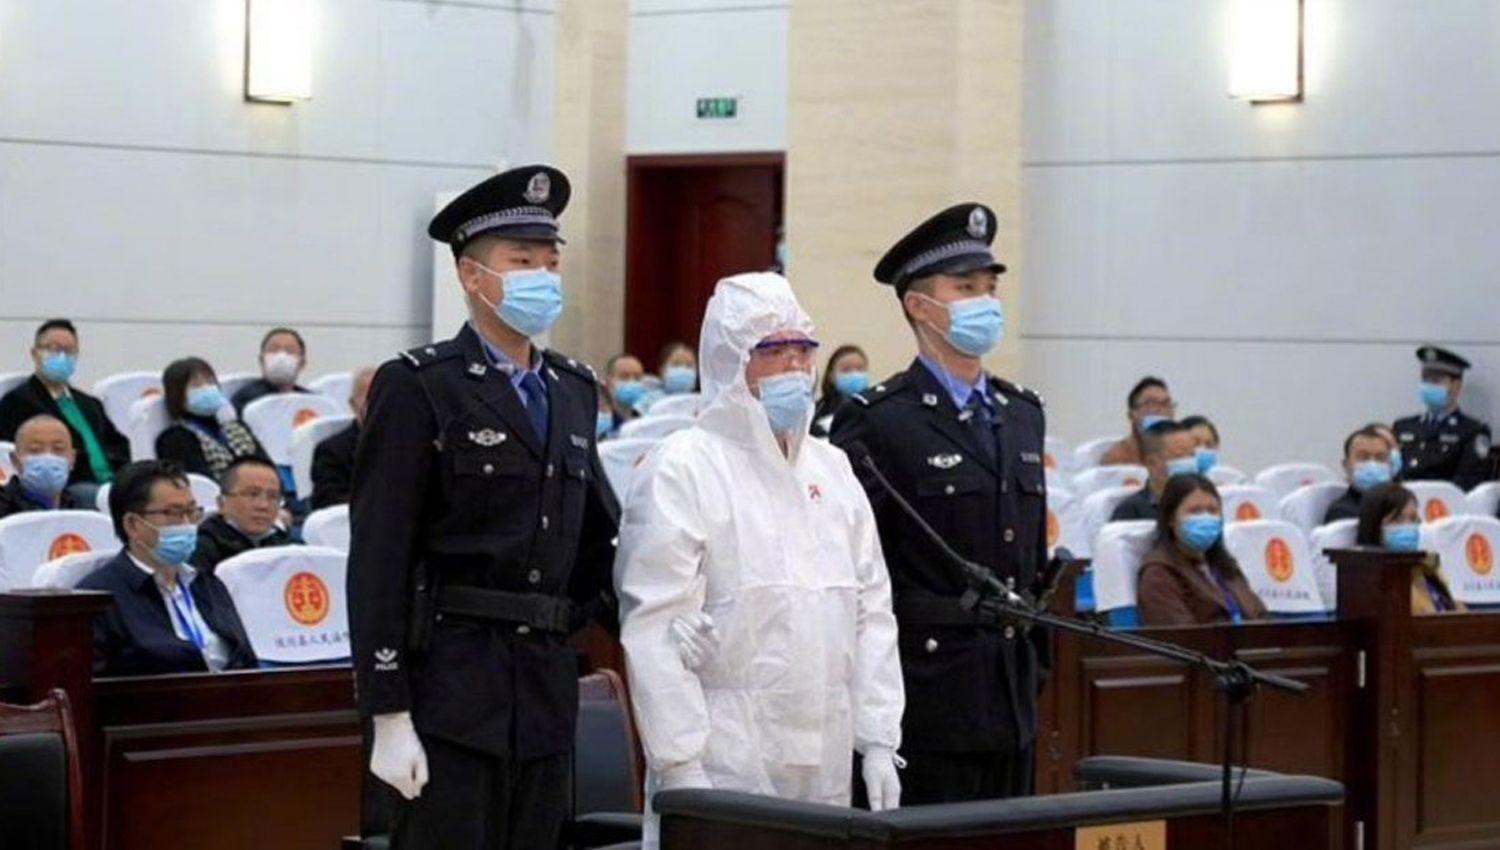 El asesino este jueves en el Tribunal Fue condenado a muerte (Televisión China)